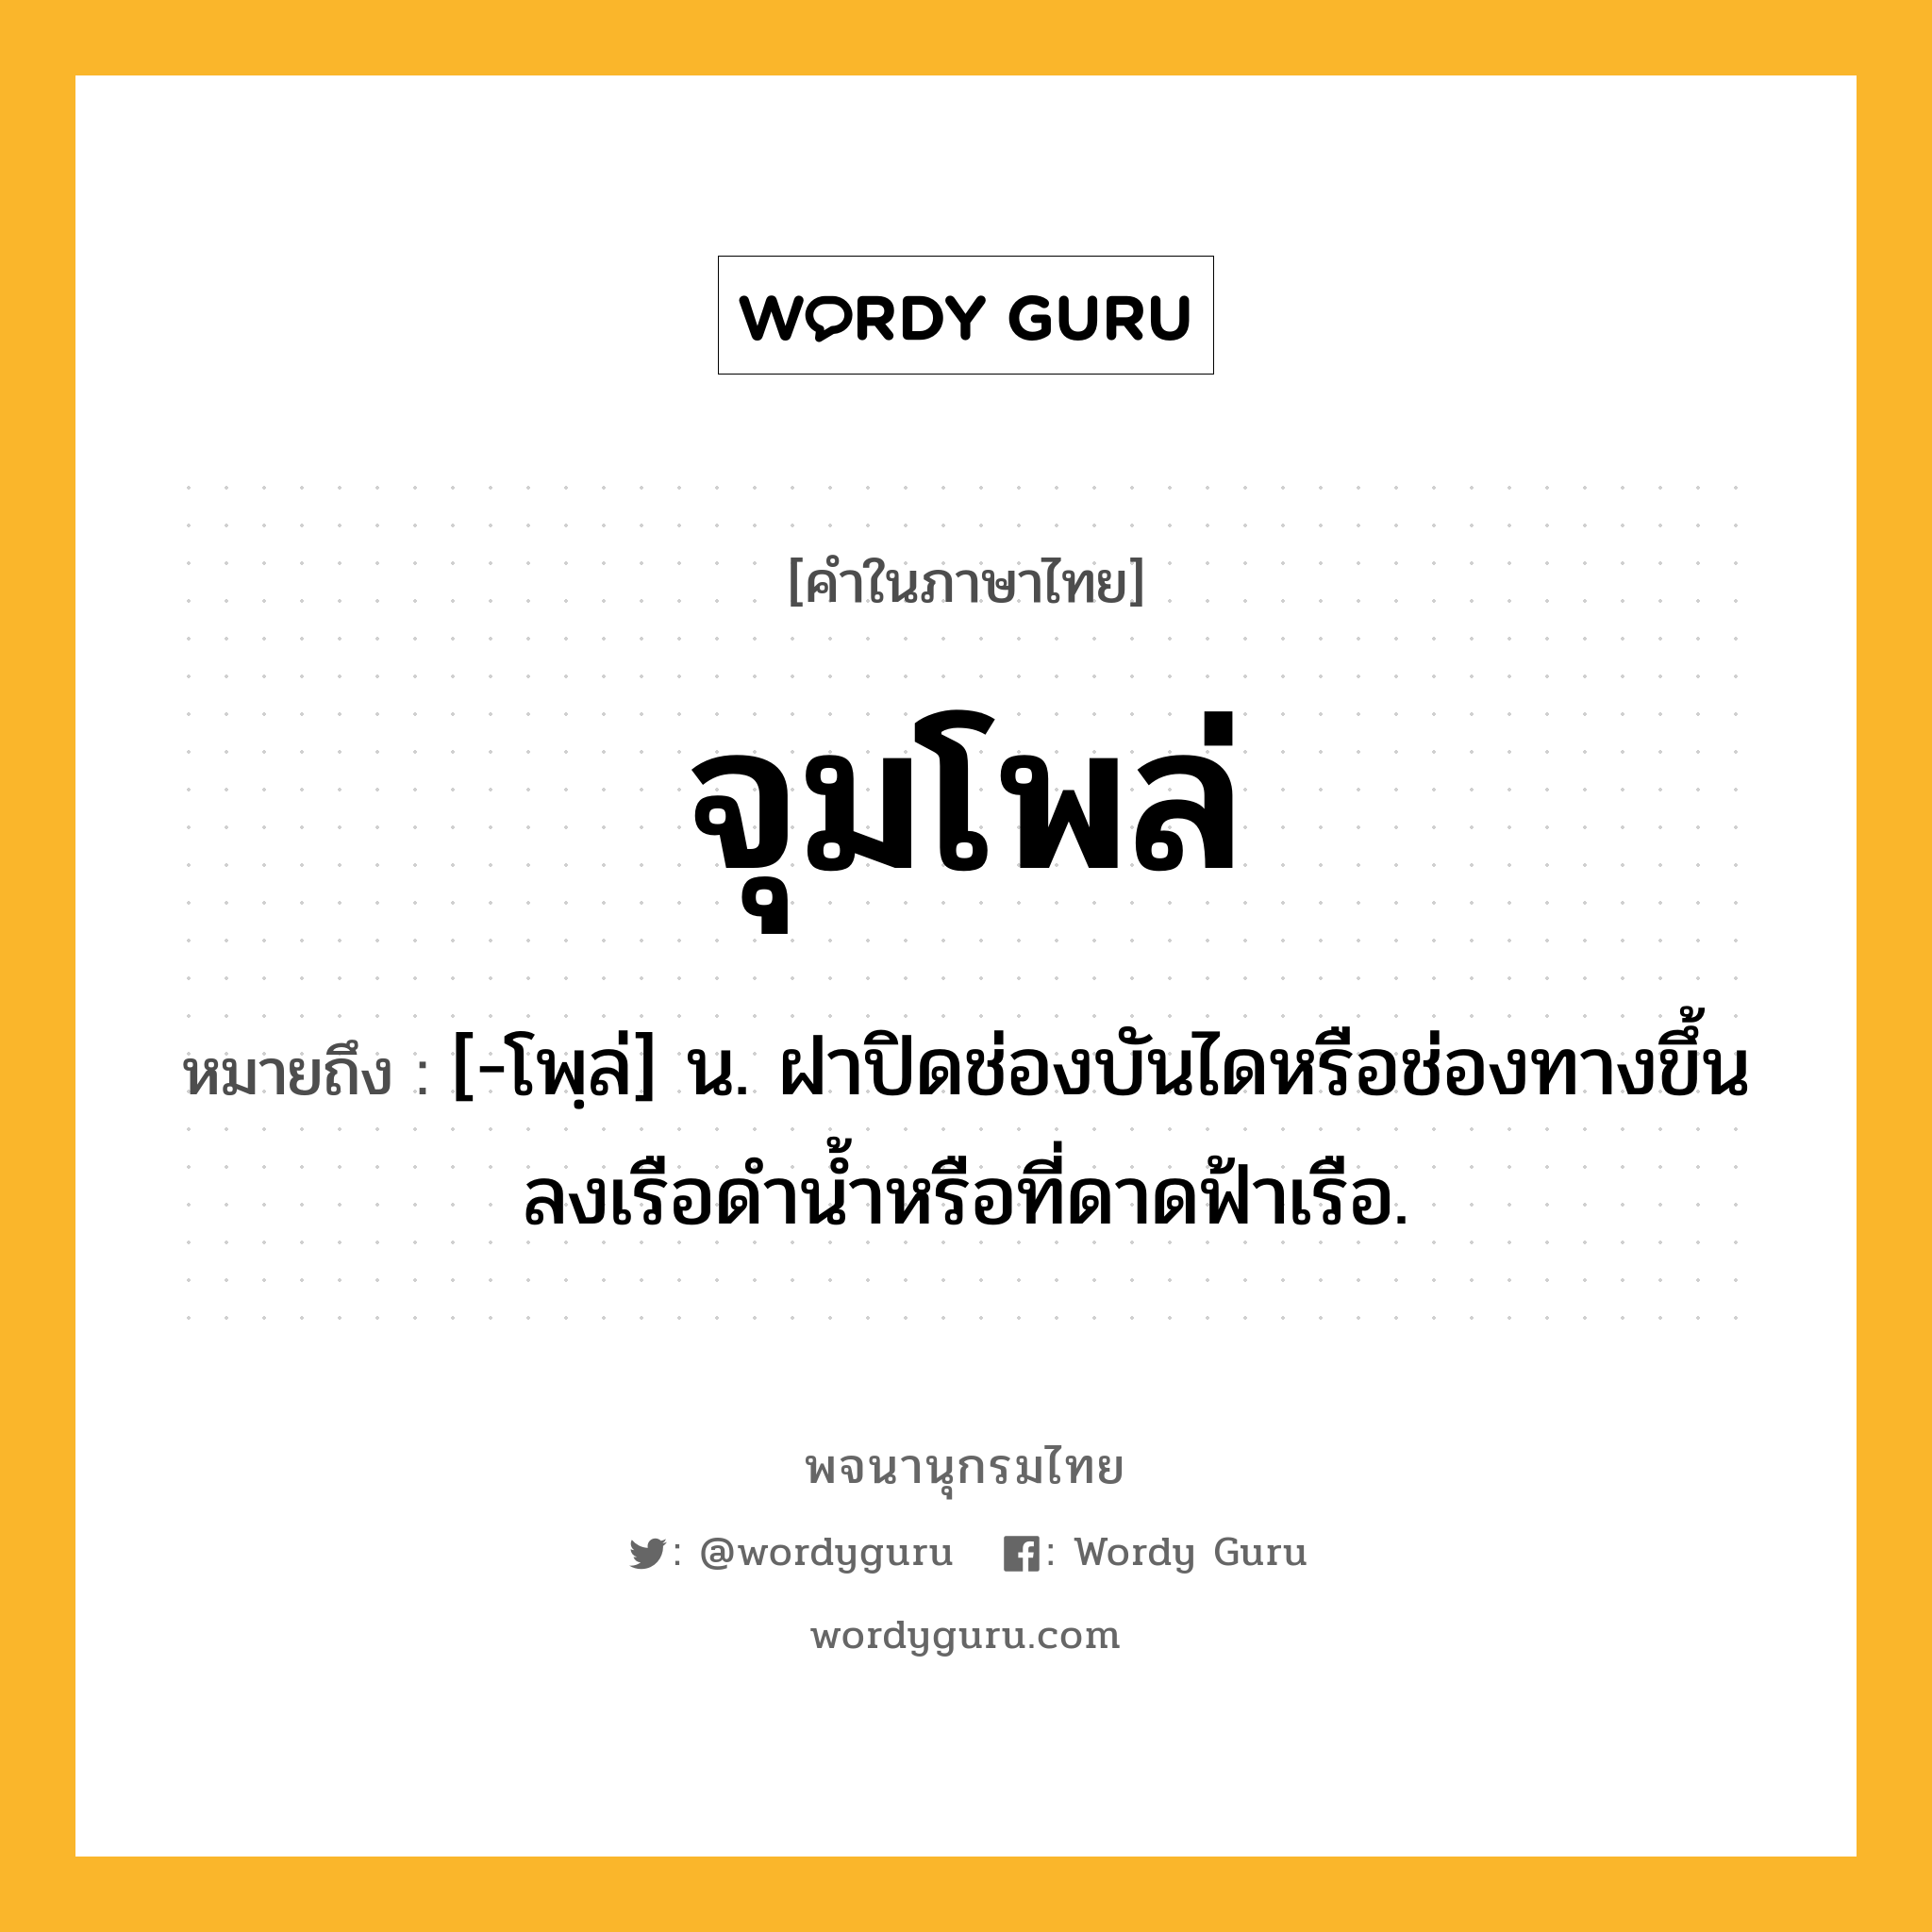 จุมโพล่ หมายถึงอะไร?, คำในภาษาไทย จุมโพล่ หมายถึง [-โพฺล่] น. ฝาปิดช่องบันไดหรือช่องทางขึ้นลงเรือดำน้ำหรือที่ดาดฟ้าเรือ.